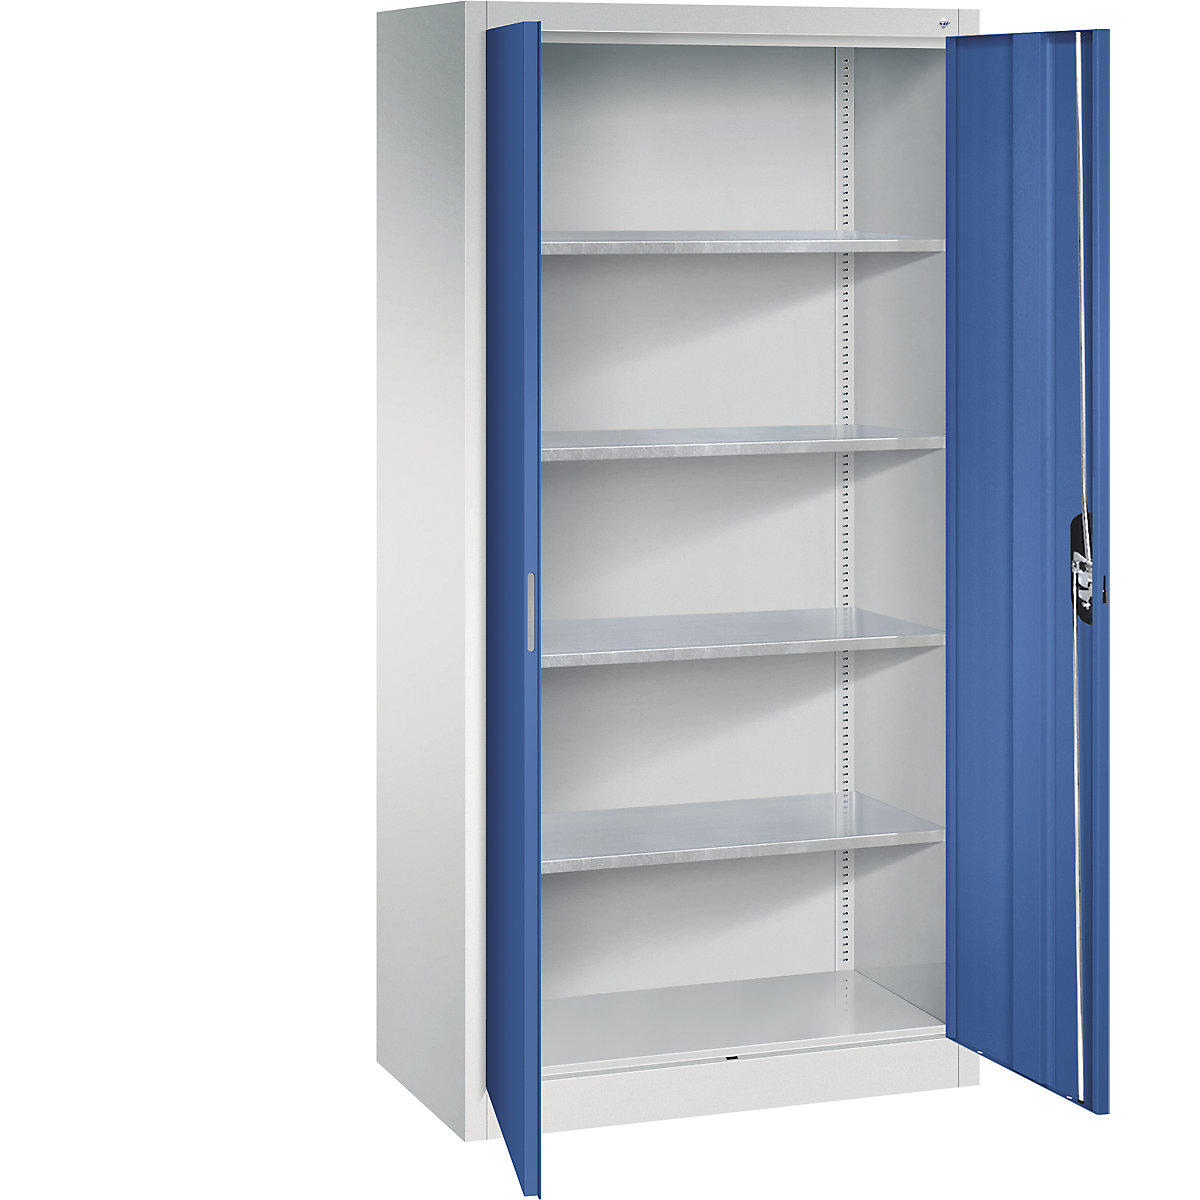 Dílenská skříň s otočnými dveřmi – C+P, v x š x h 1950 x 930 x 500 mm, světlá šedá / enciánová modrá-13